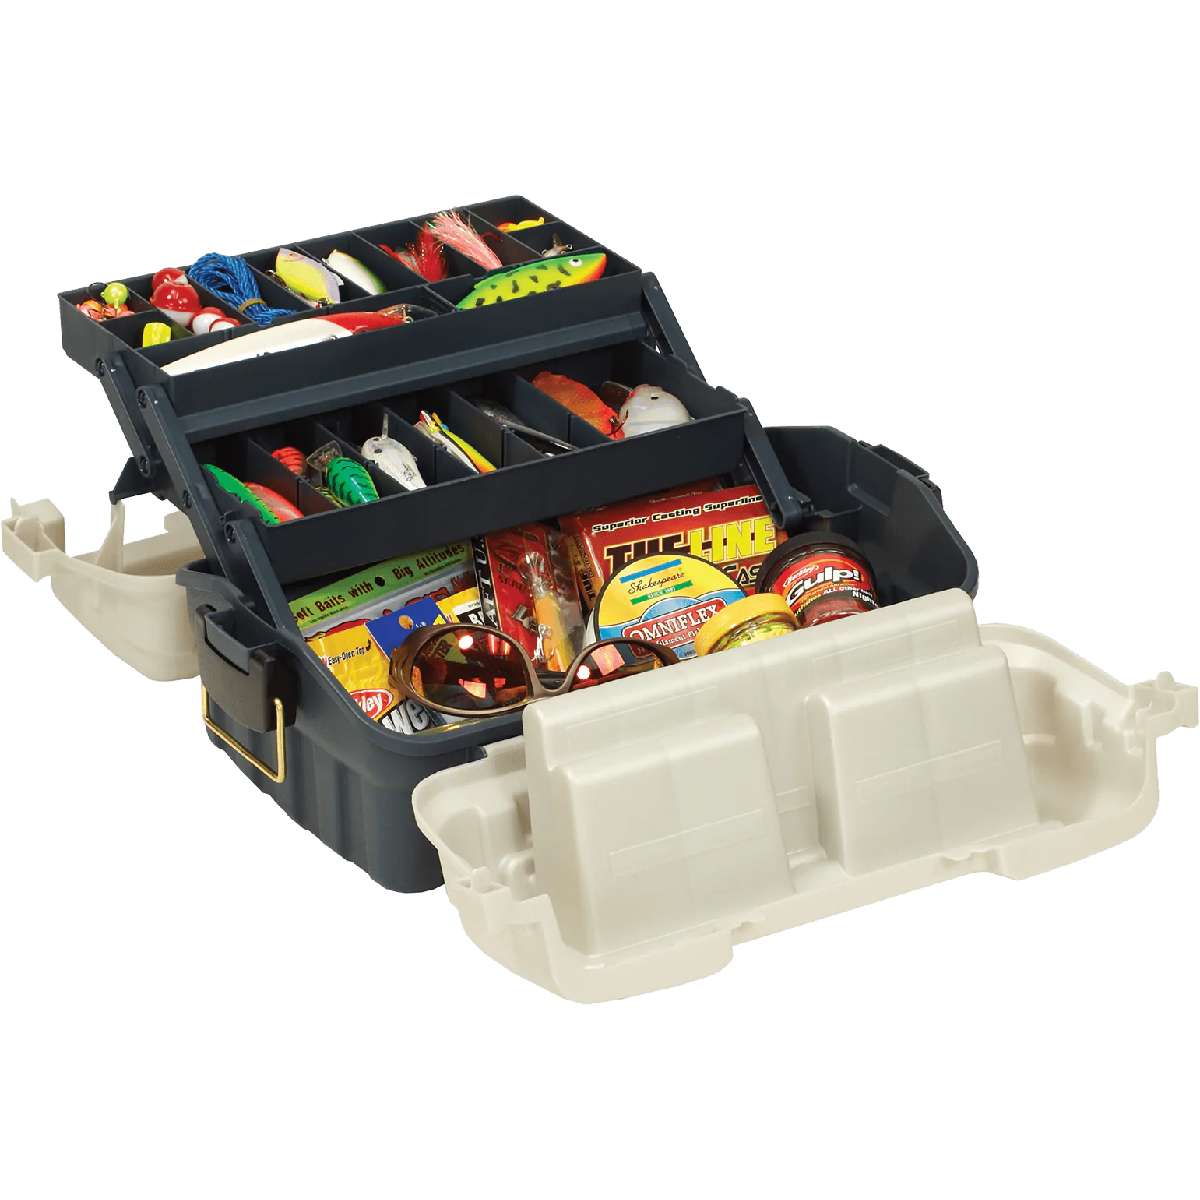 Plano FlipSider 2 Tray Tackle Box - 7602-00